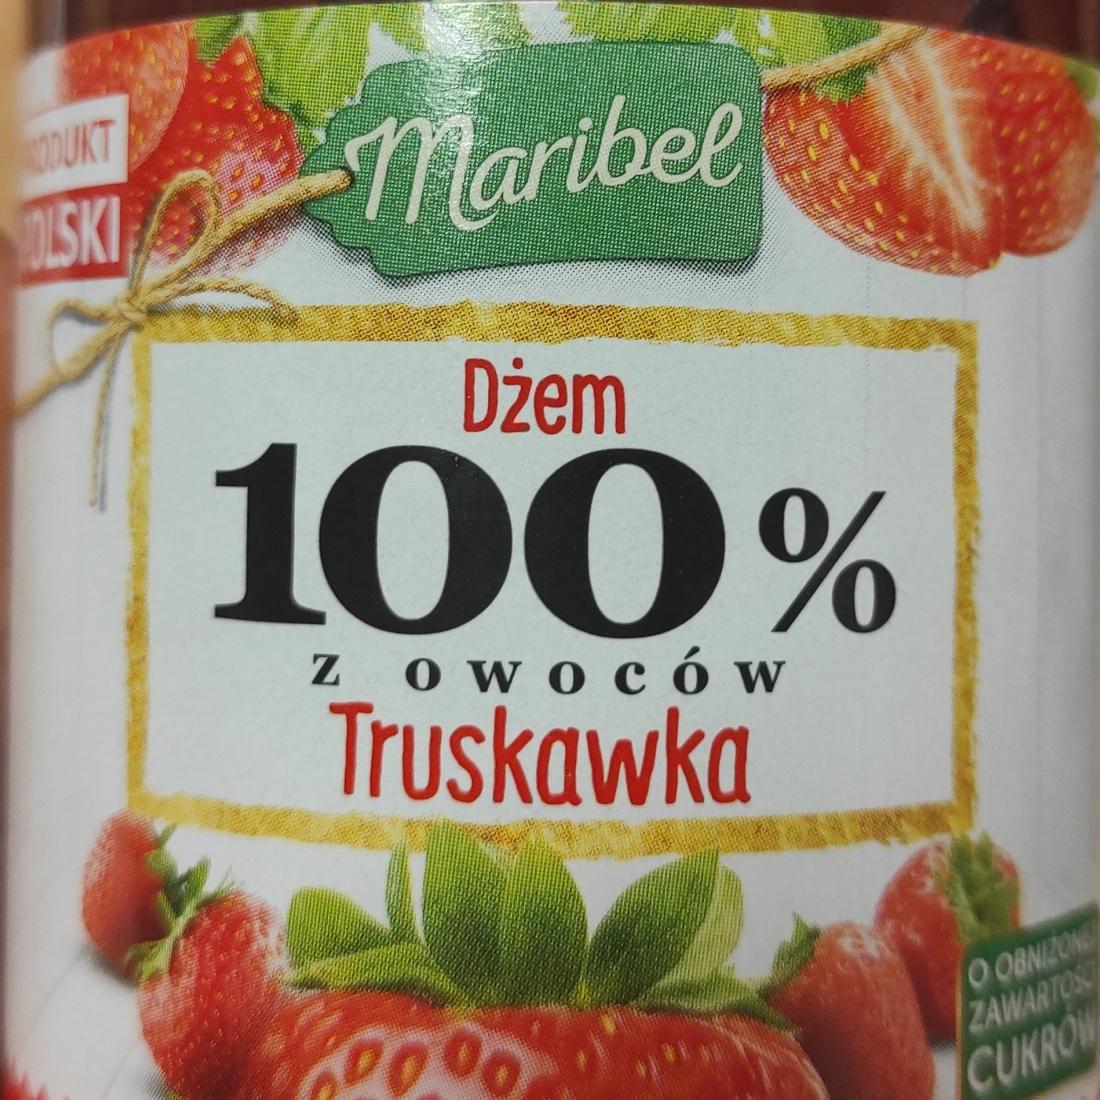 Zdjęcia - Dżem 100% z owoców Truskawka Maribel